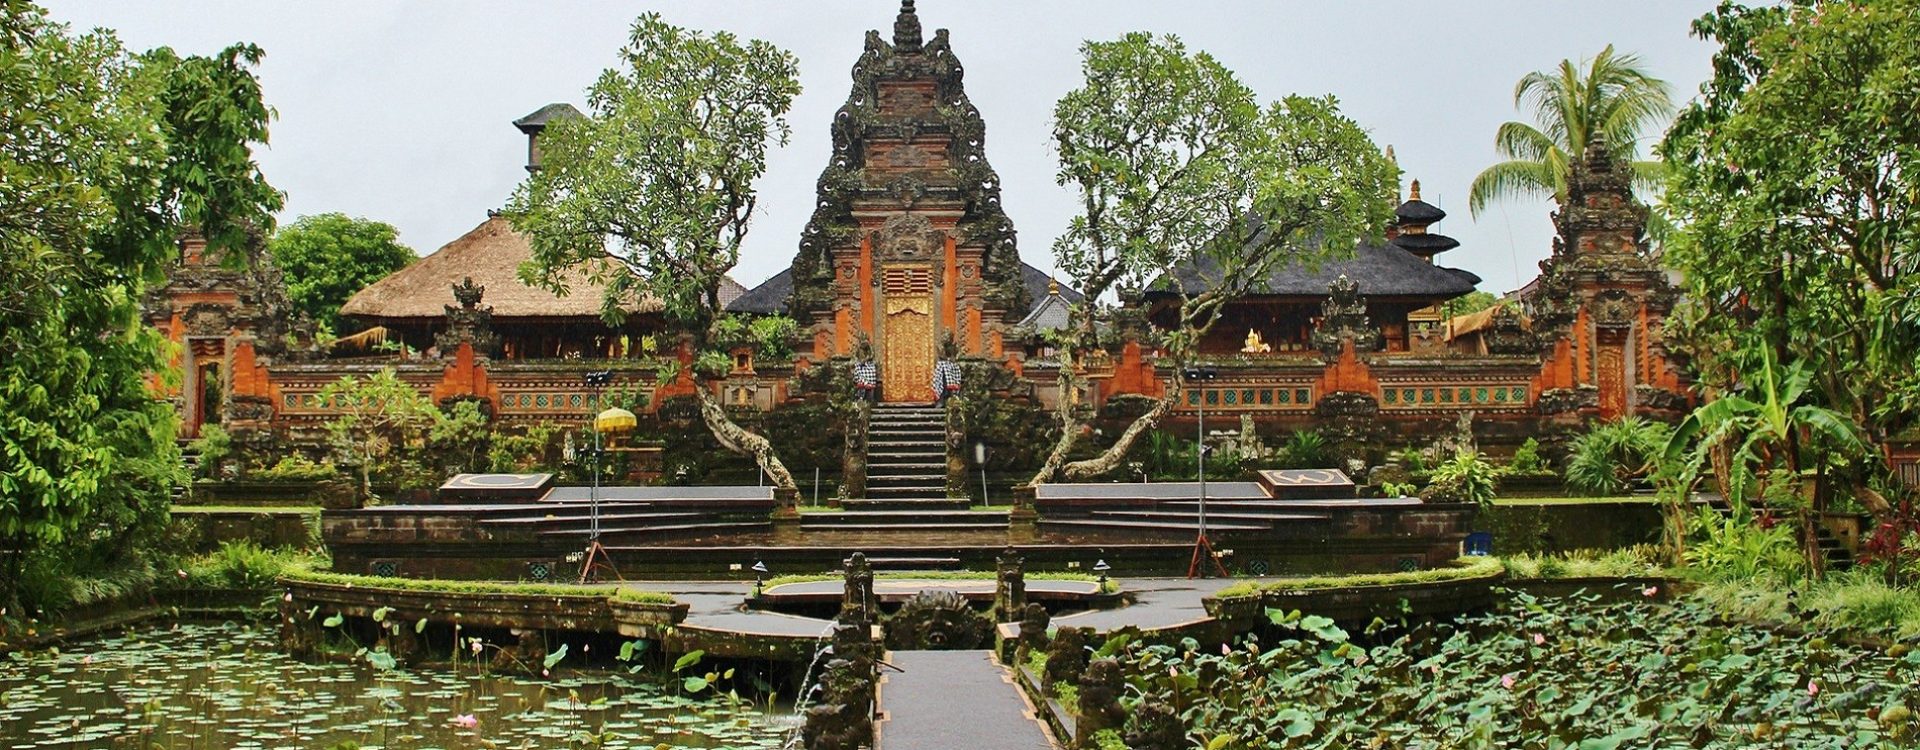 Odlučite se za putovanje na otok Bali i istražite brojne atrakcije koje definiraju Bali kao svjetsku top destinaciju.